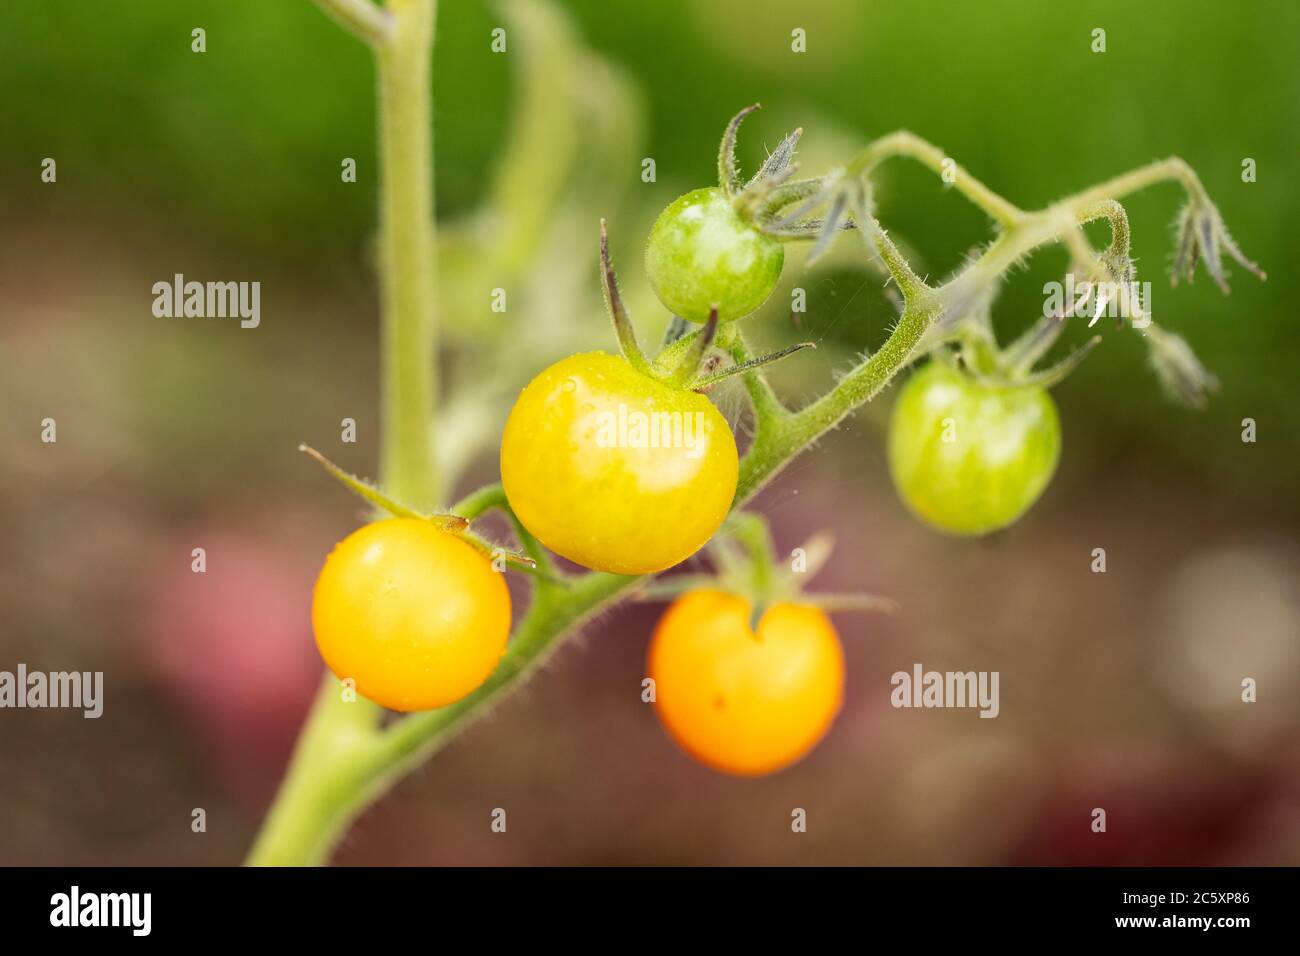 Pomodori ciliegini gialli e verdi (Solanum lycopersicum var. Cerasiformi) coltivati su una vite in un orto estivo. Foto Stock